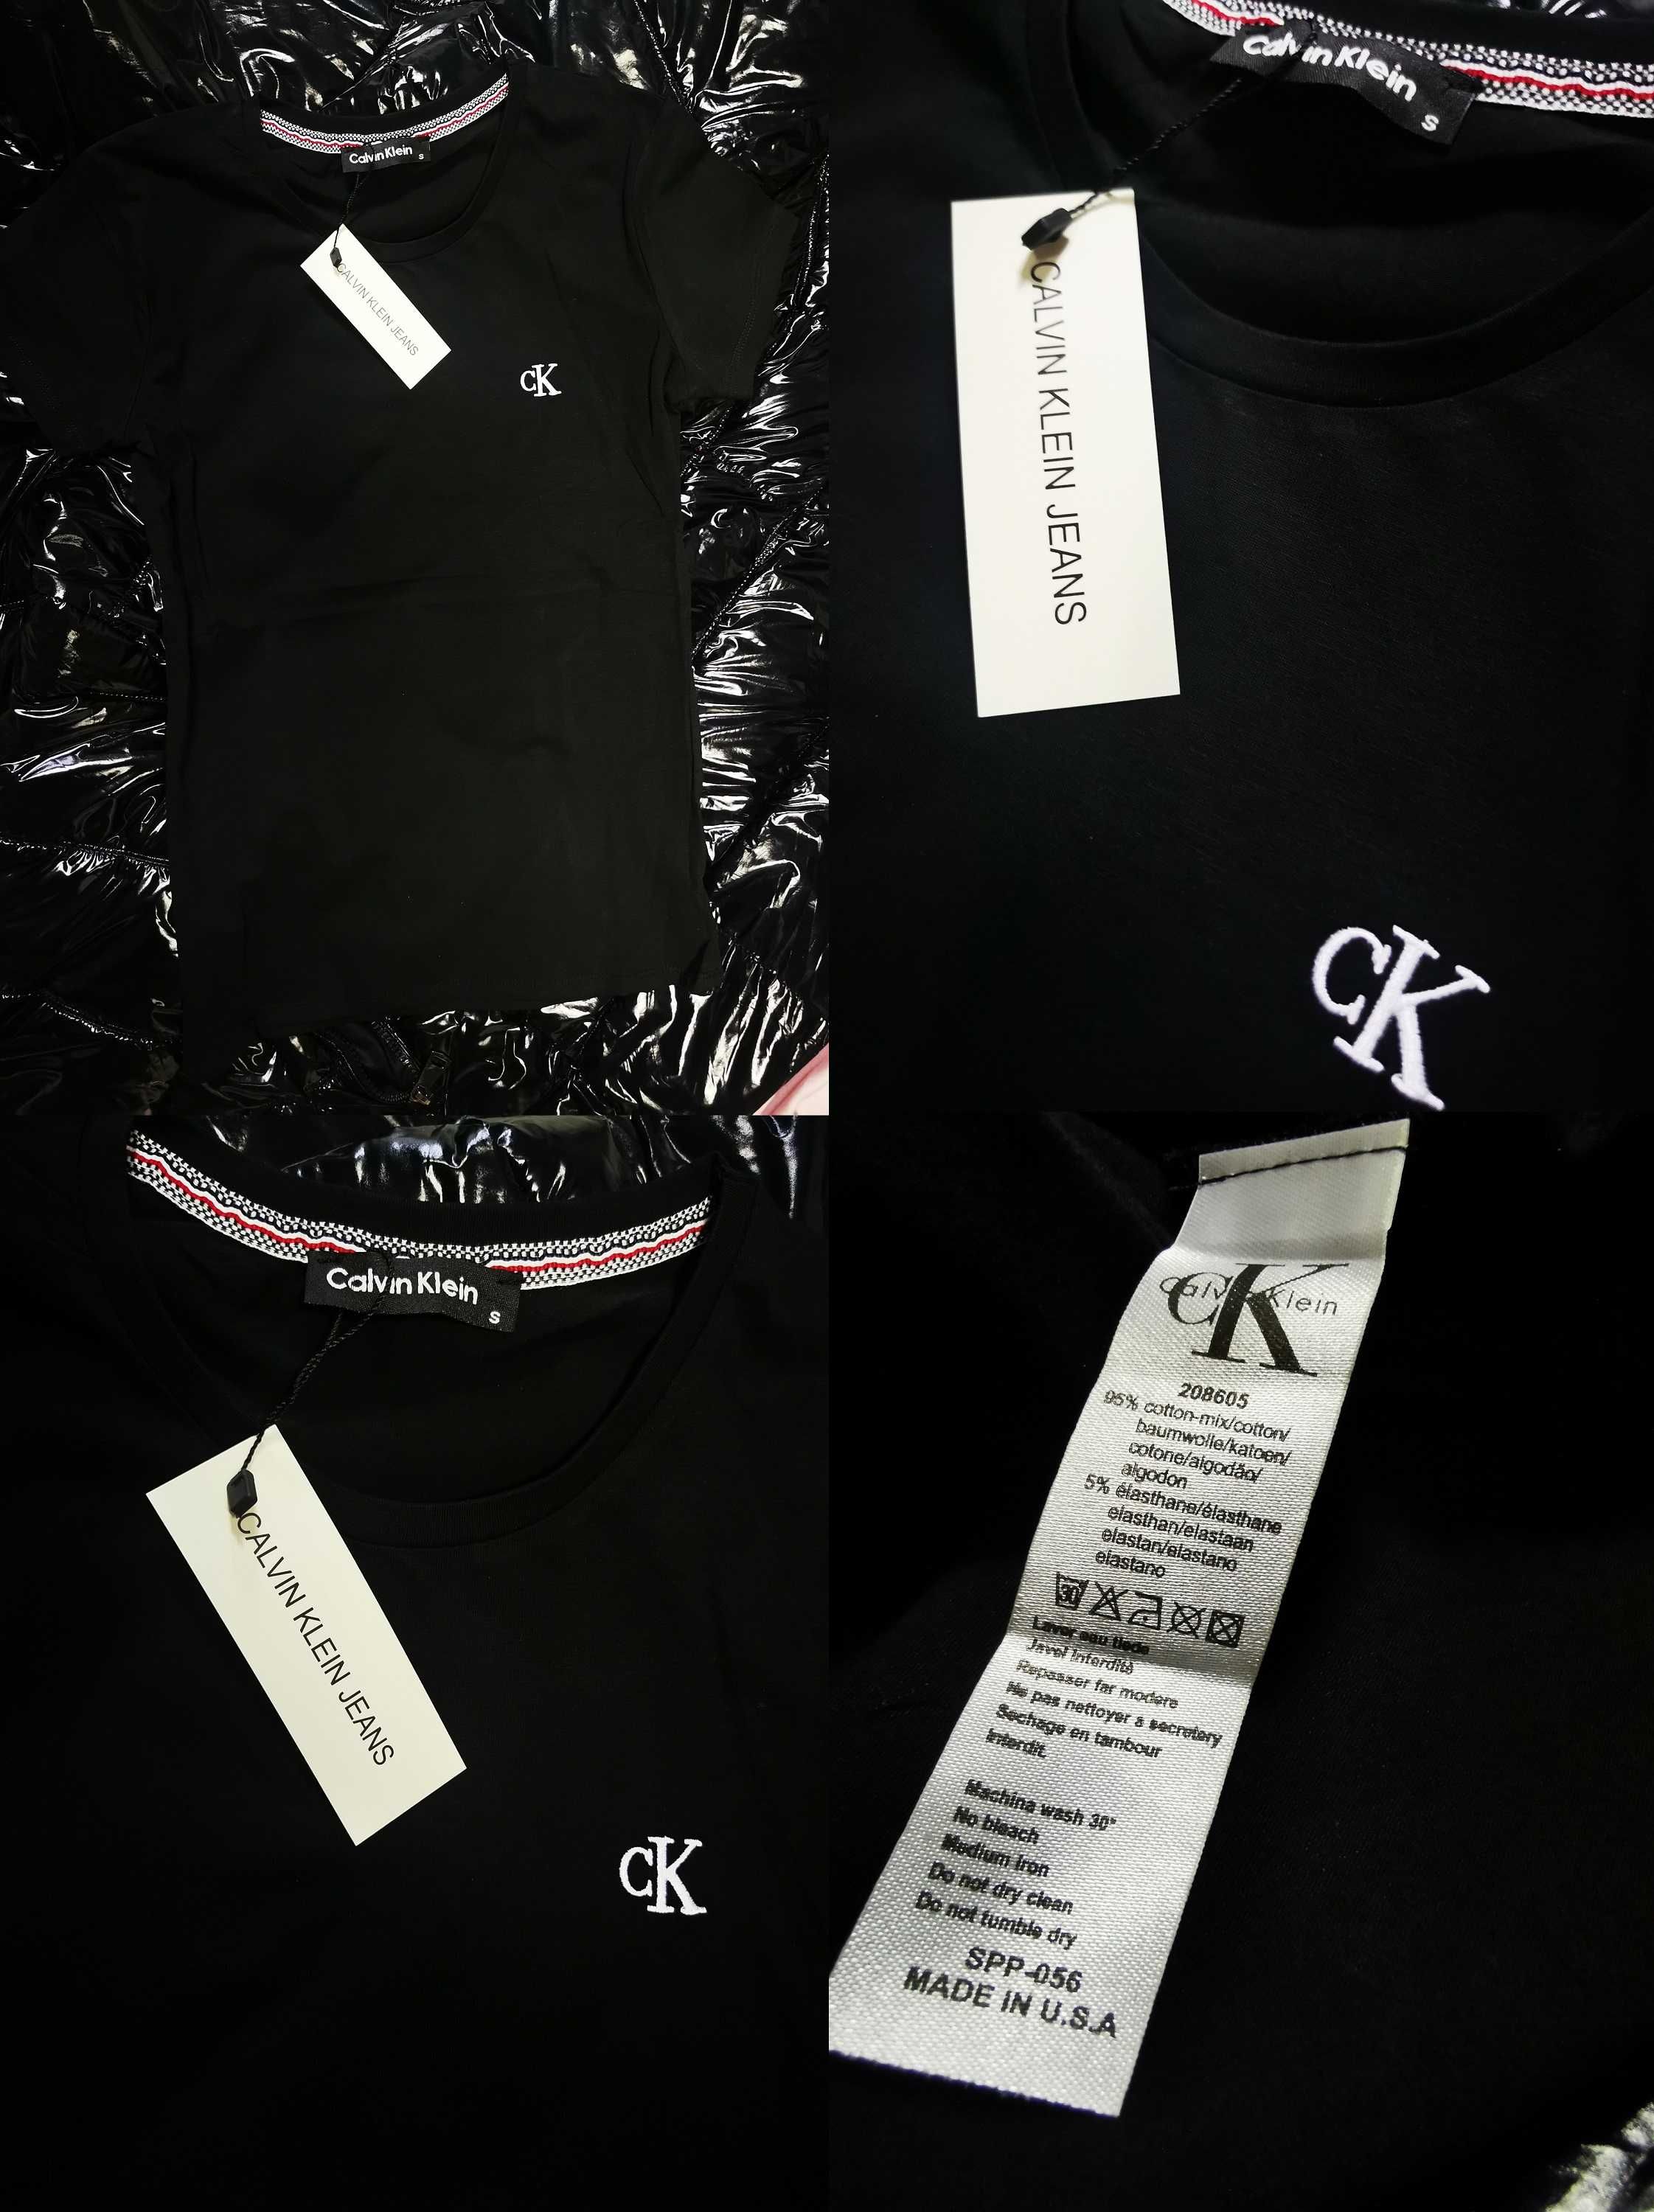 Koszulki damskie Ralph Lauren Calvin Klein CK nowość hit